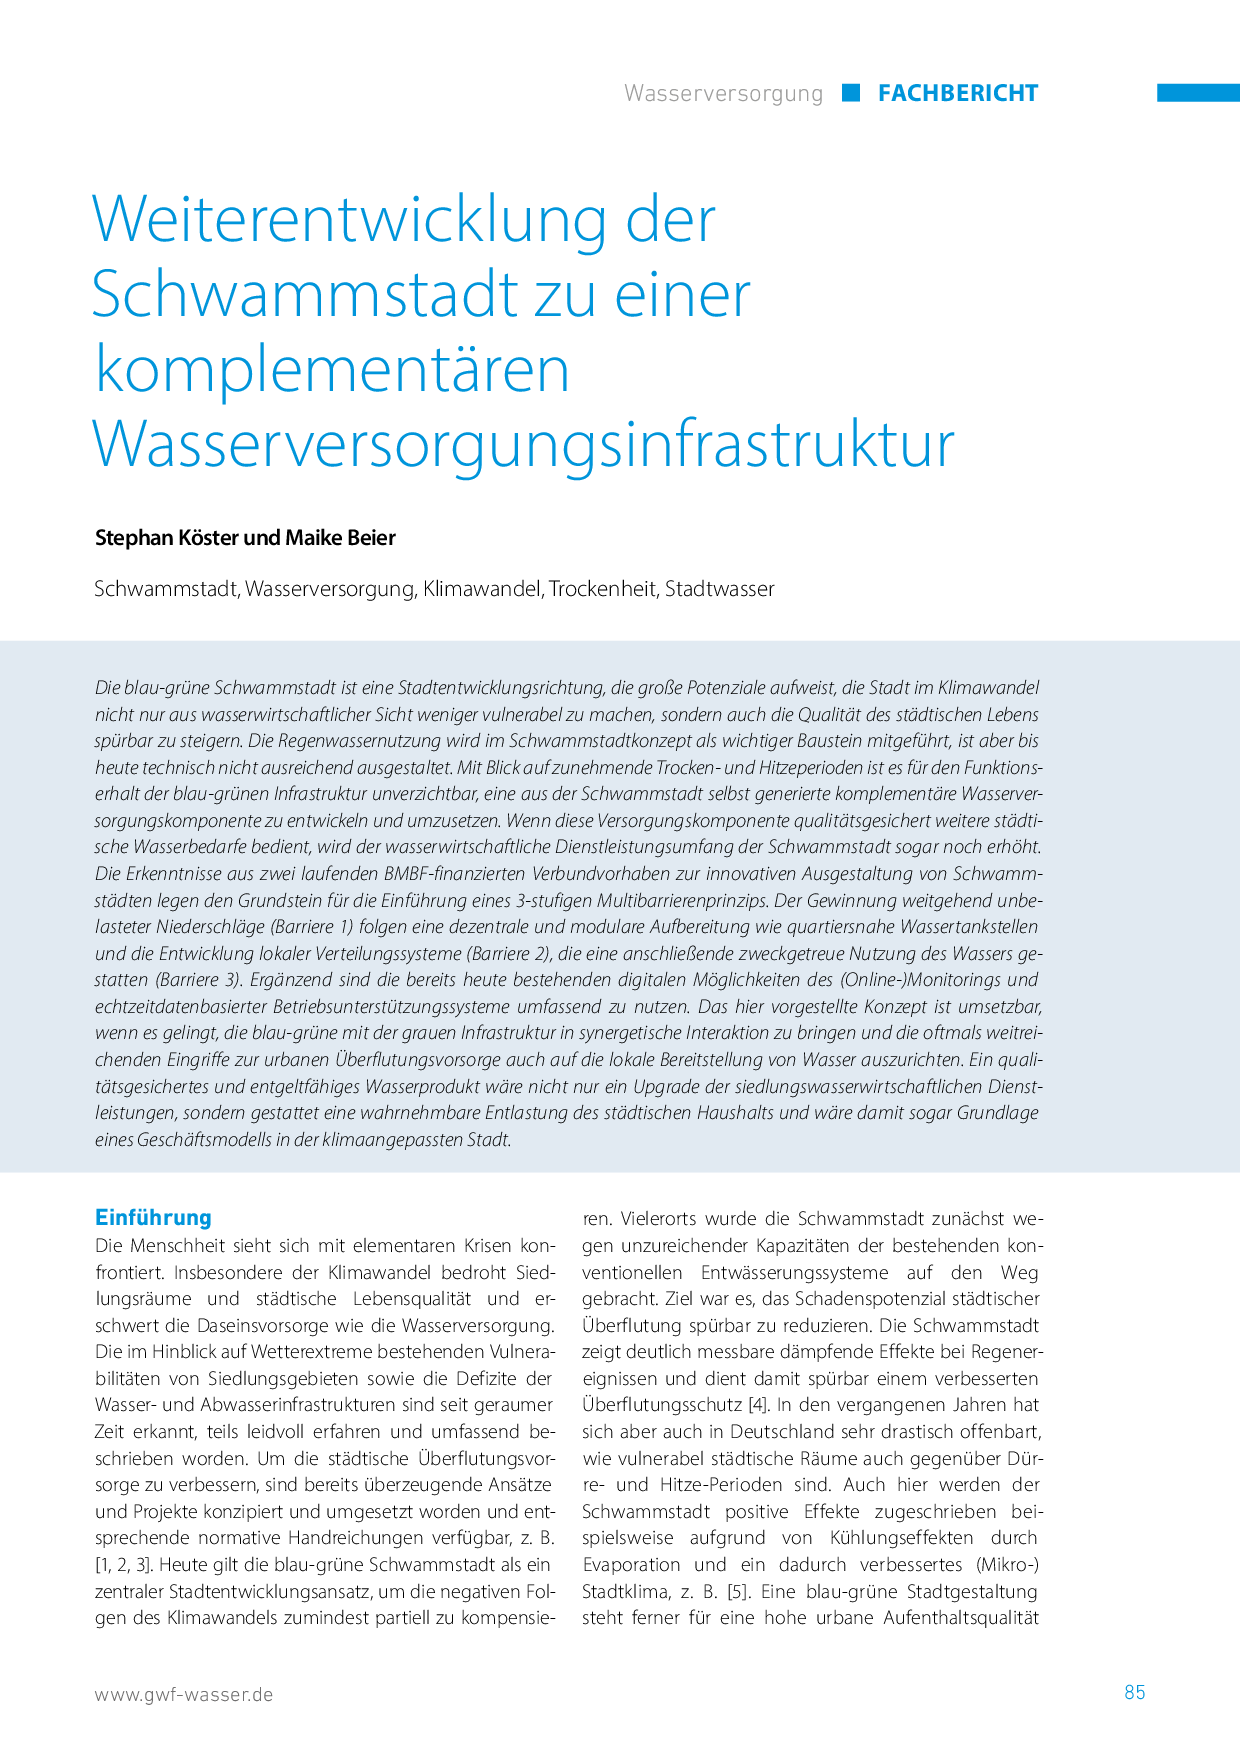 Weiterentwicklung der Schwammstadt zu einer komplementären Wasserversorgungsinfrastruktur